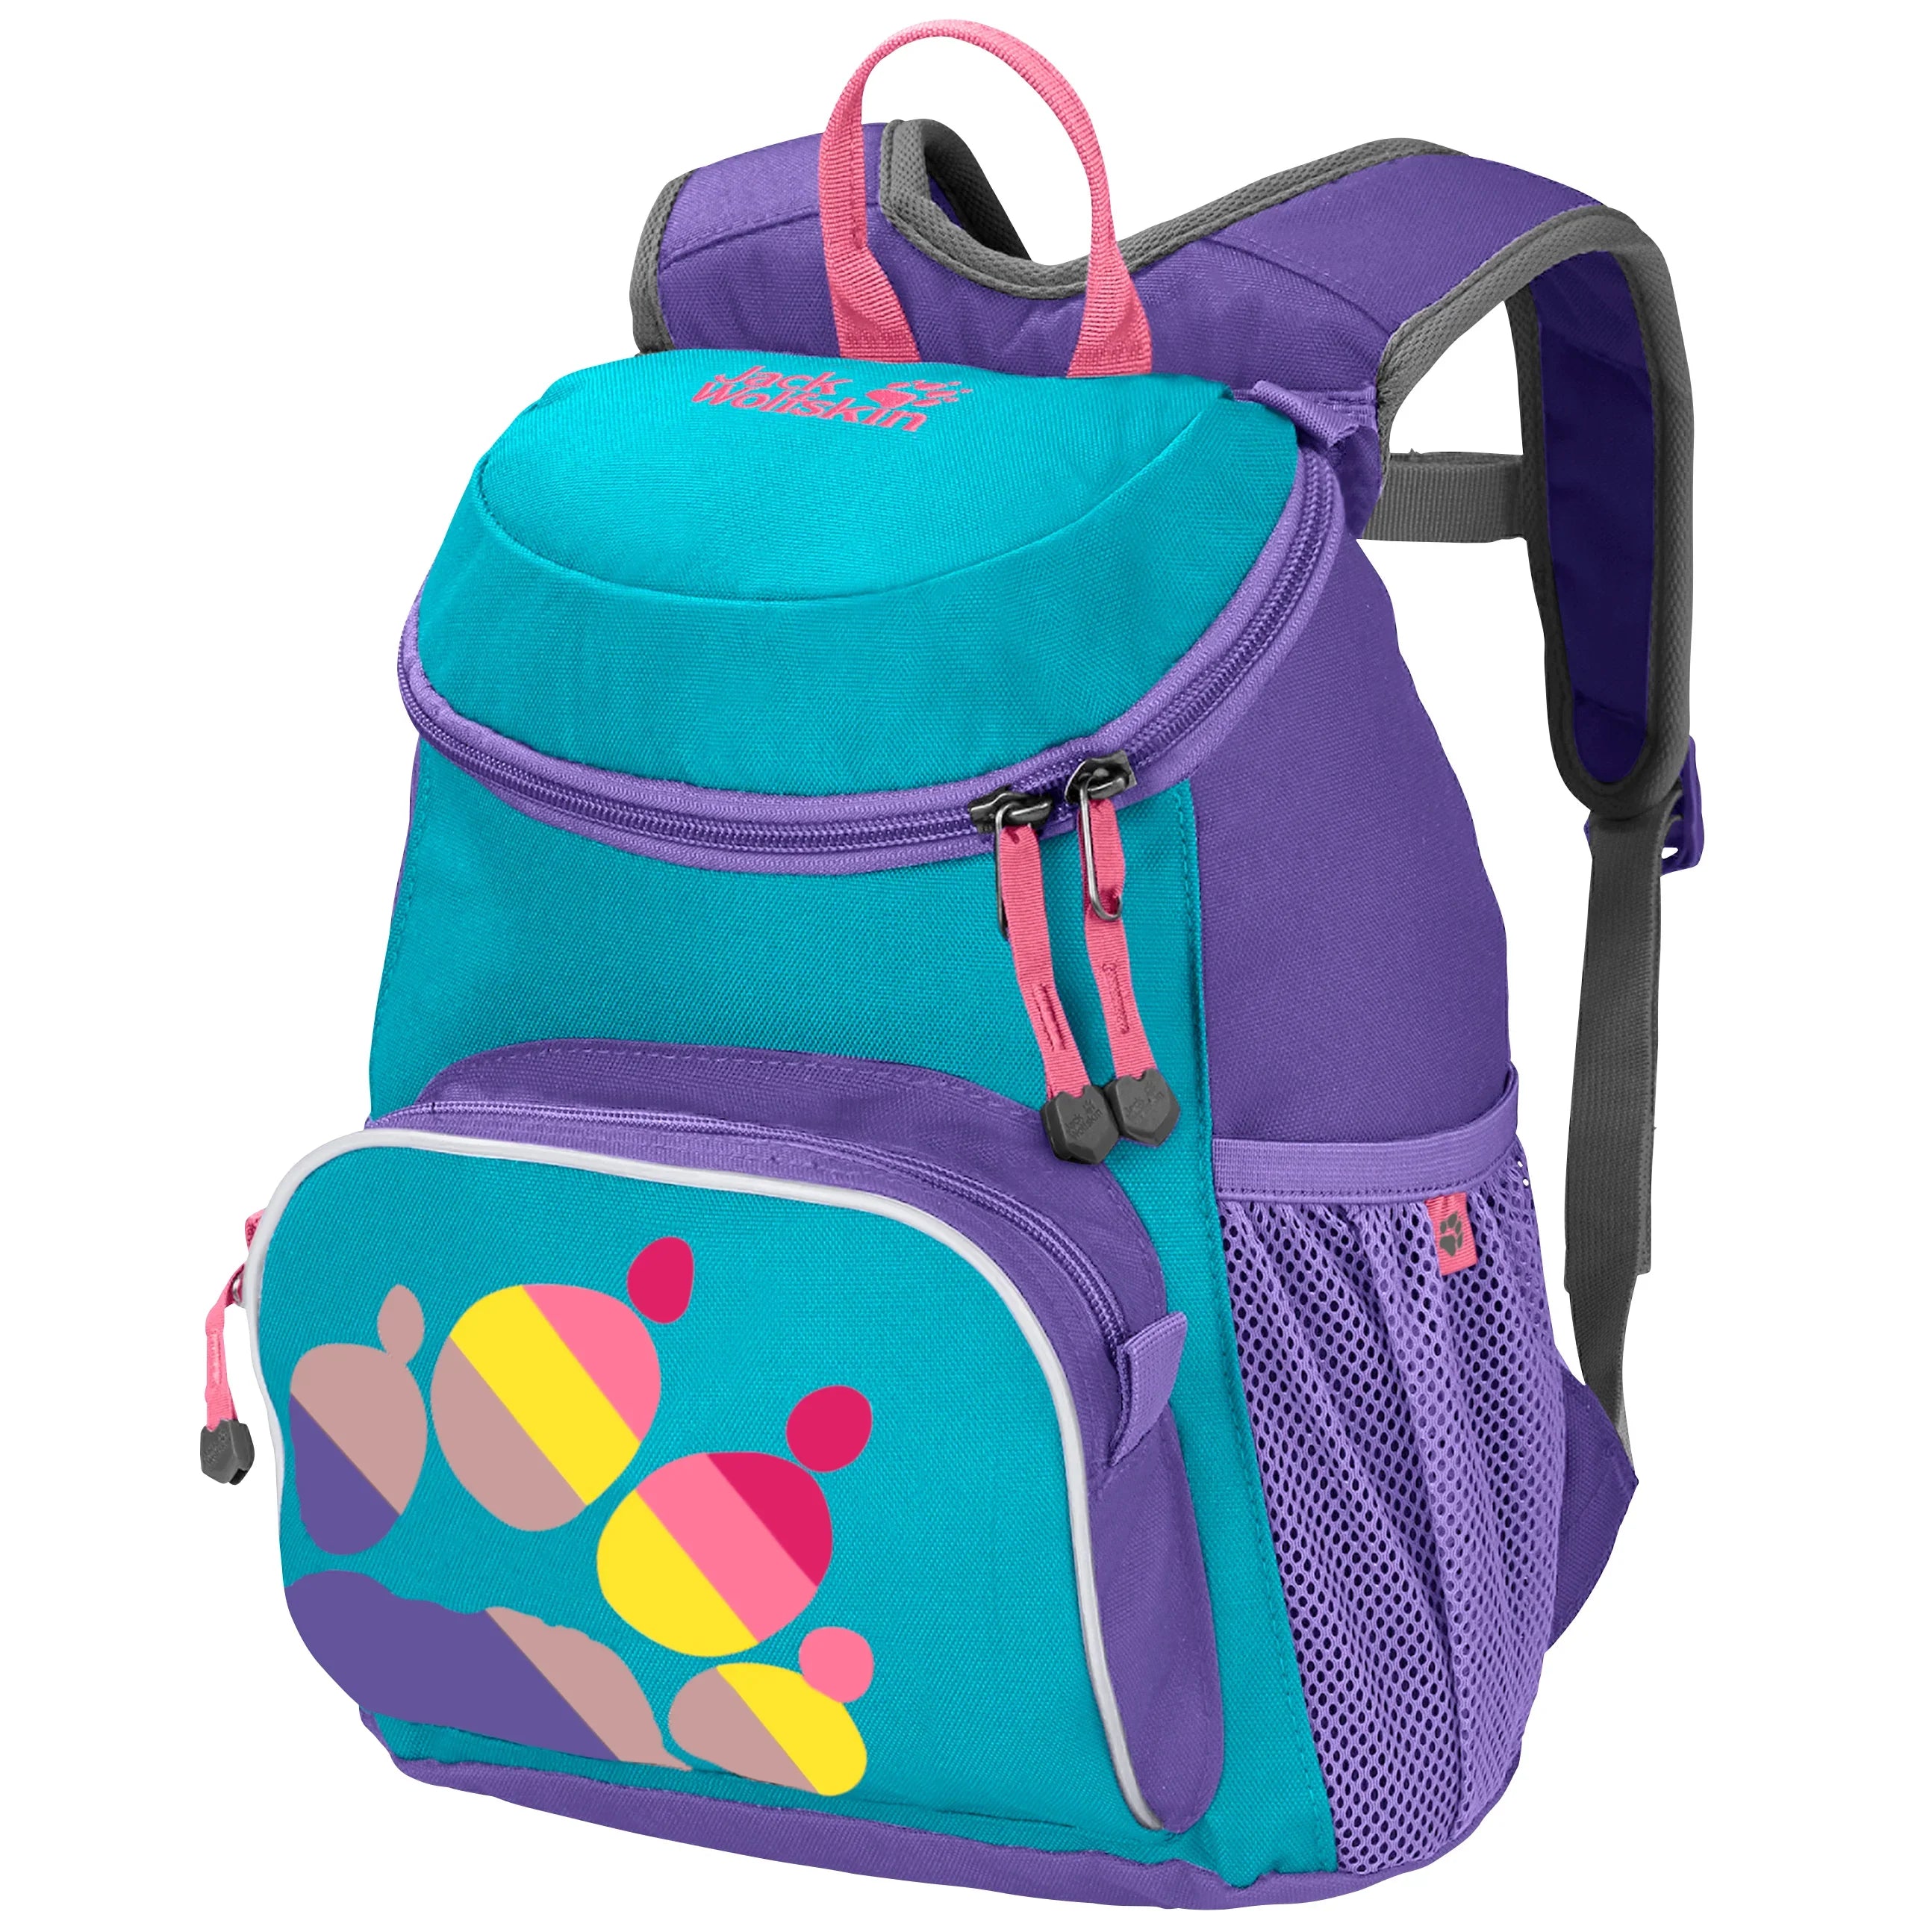 Jack Wolfskin Family Little Joe children's backpack 31 cm - Dark Violet